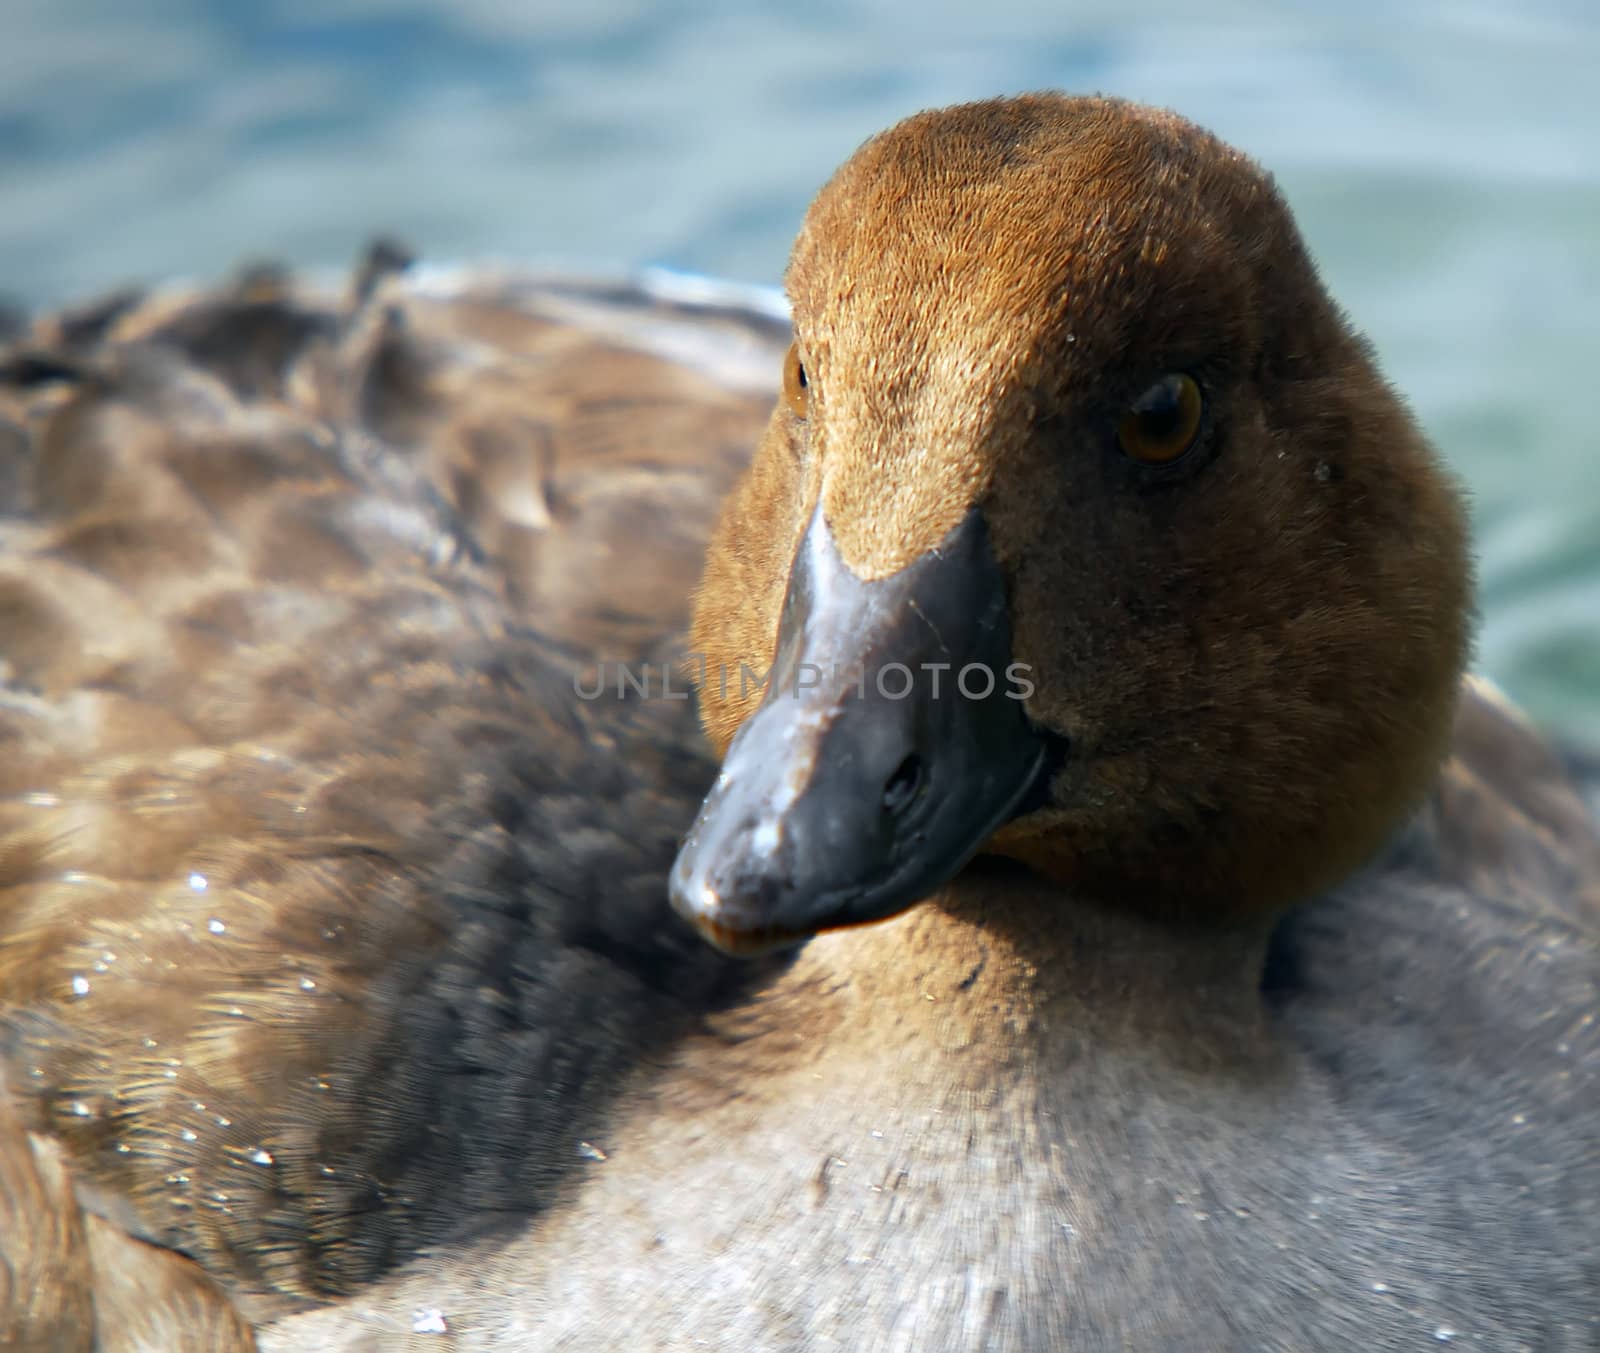 Closeup portrait of a duck